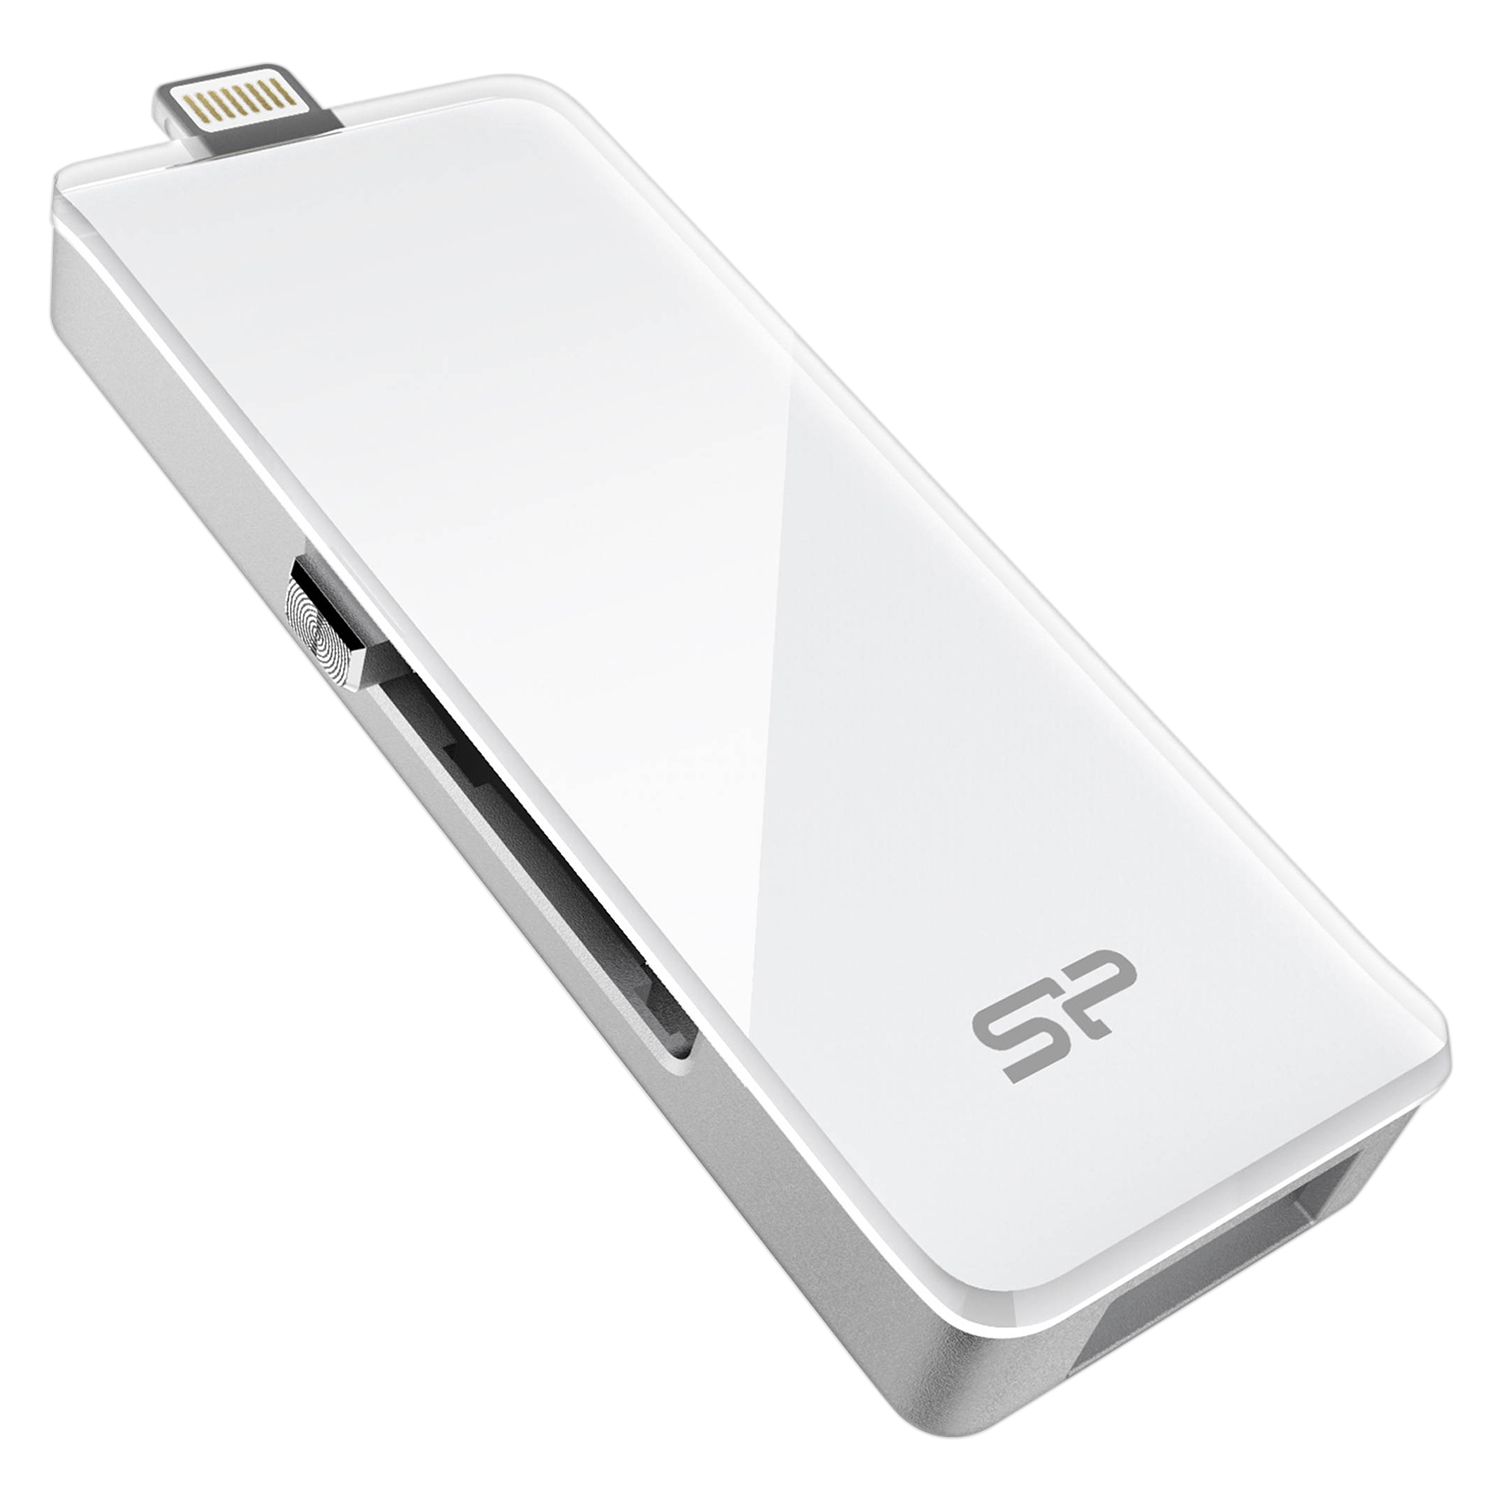 USB Lightning Silicon Power Z30 128GB - USB 3.0 - Hàng Chính Hãng